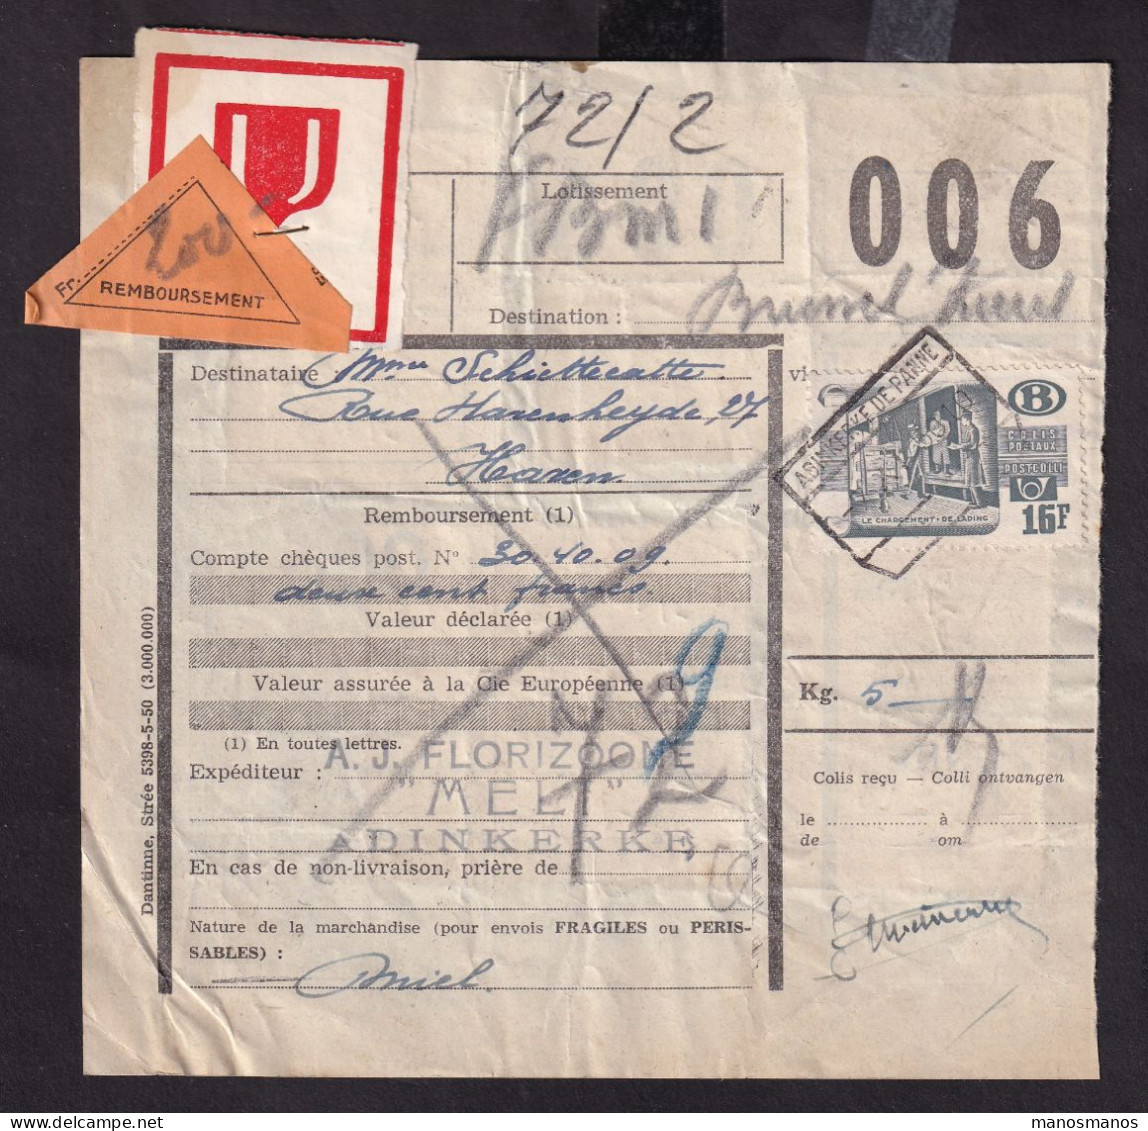 DDFF 161 - Timbres Chemin De Fer En MULTIPLES - 10 X 1/2 F (2 Marginaux) - S/ Bulletin D'Expédition - ADINKERKE 1950 - Dokumente & Fragmente